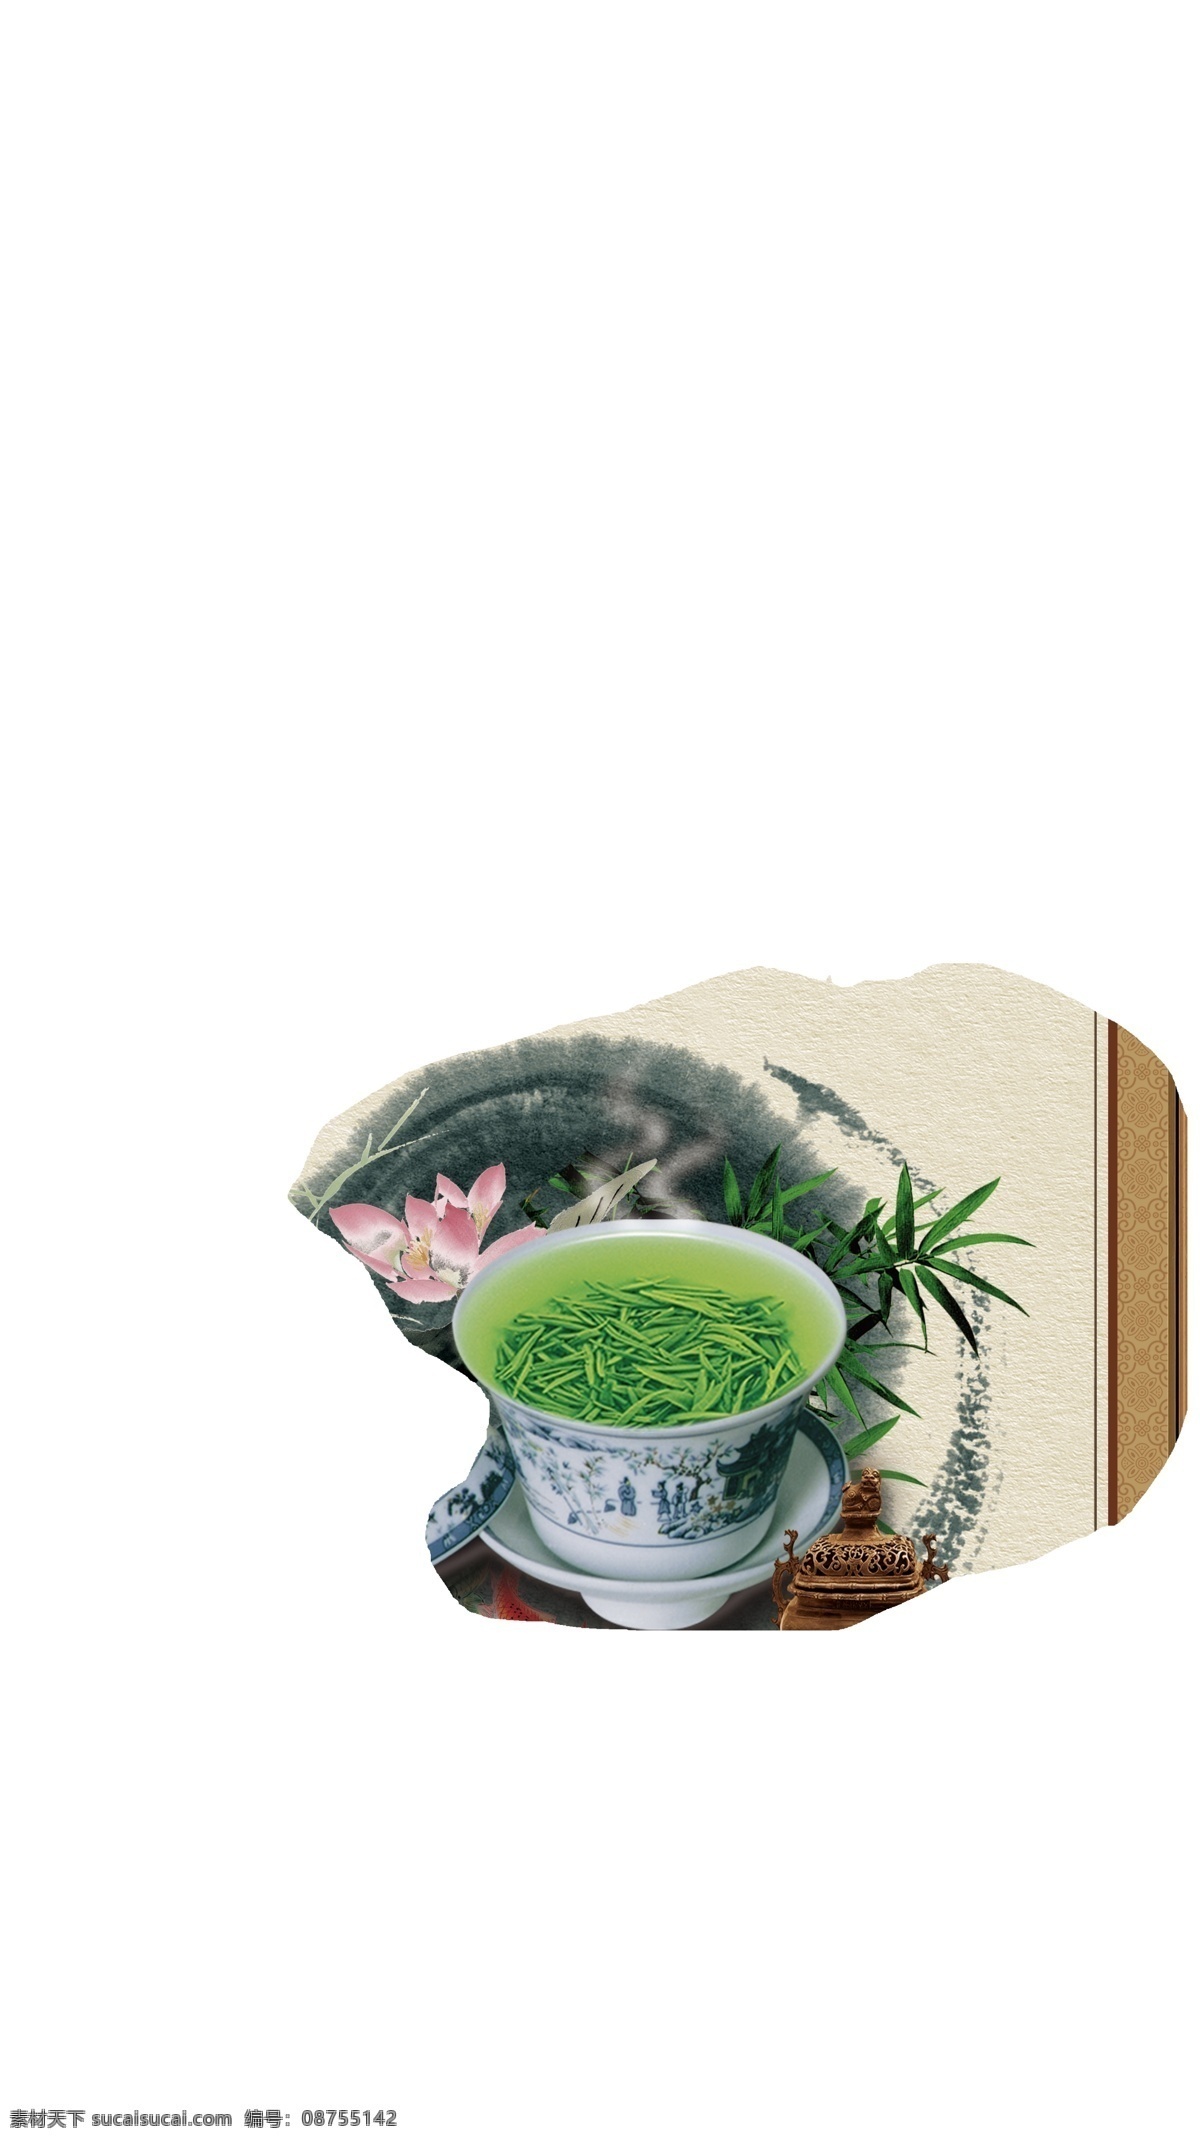 茶文化 品 紫砂壶 青花瓷 茶杯 茶叶 茶道 茶艺 品茶 国风 古典 民族风 茶 分层